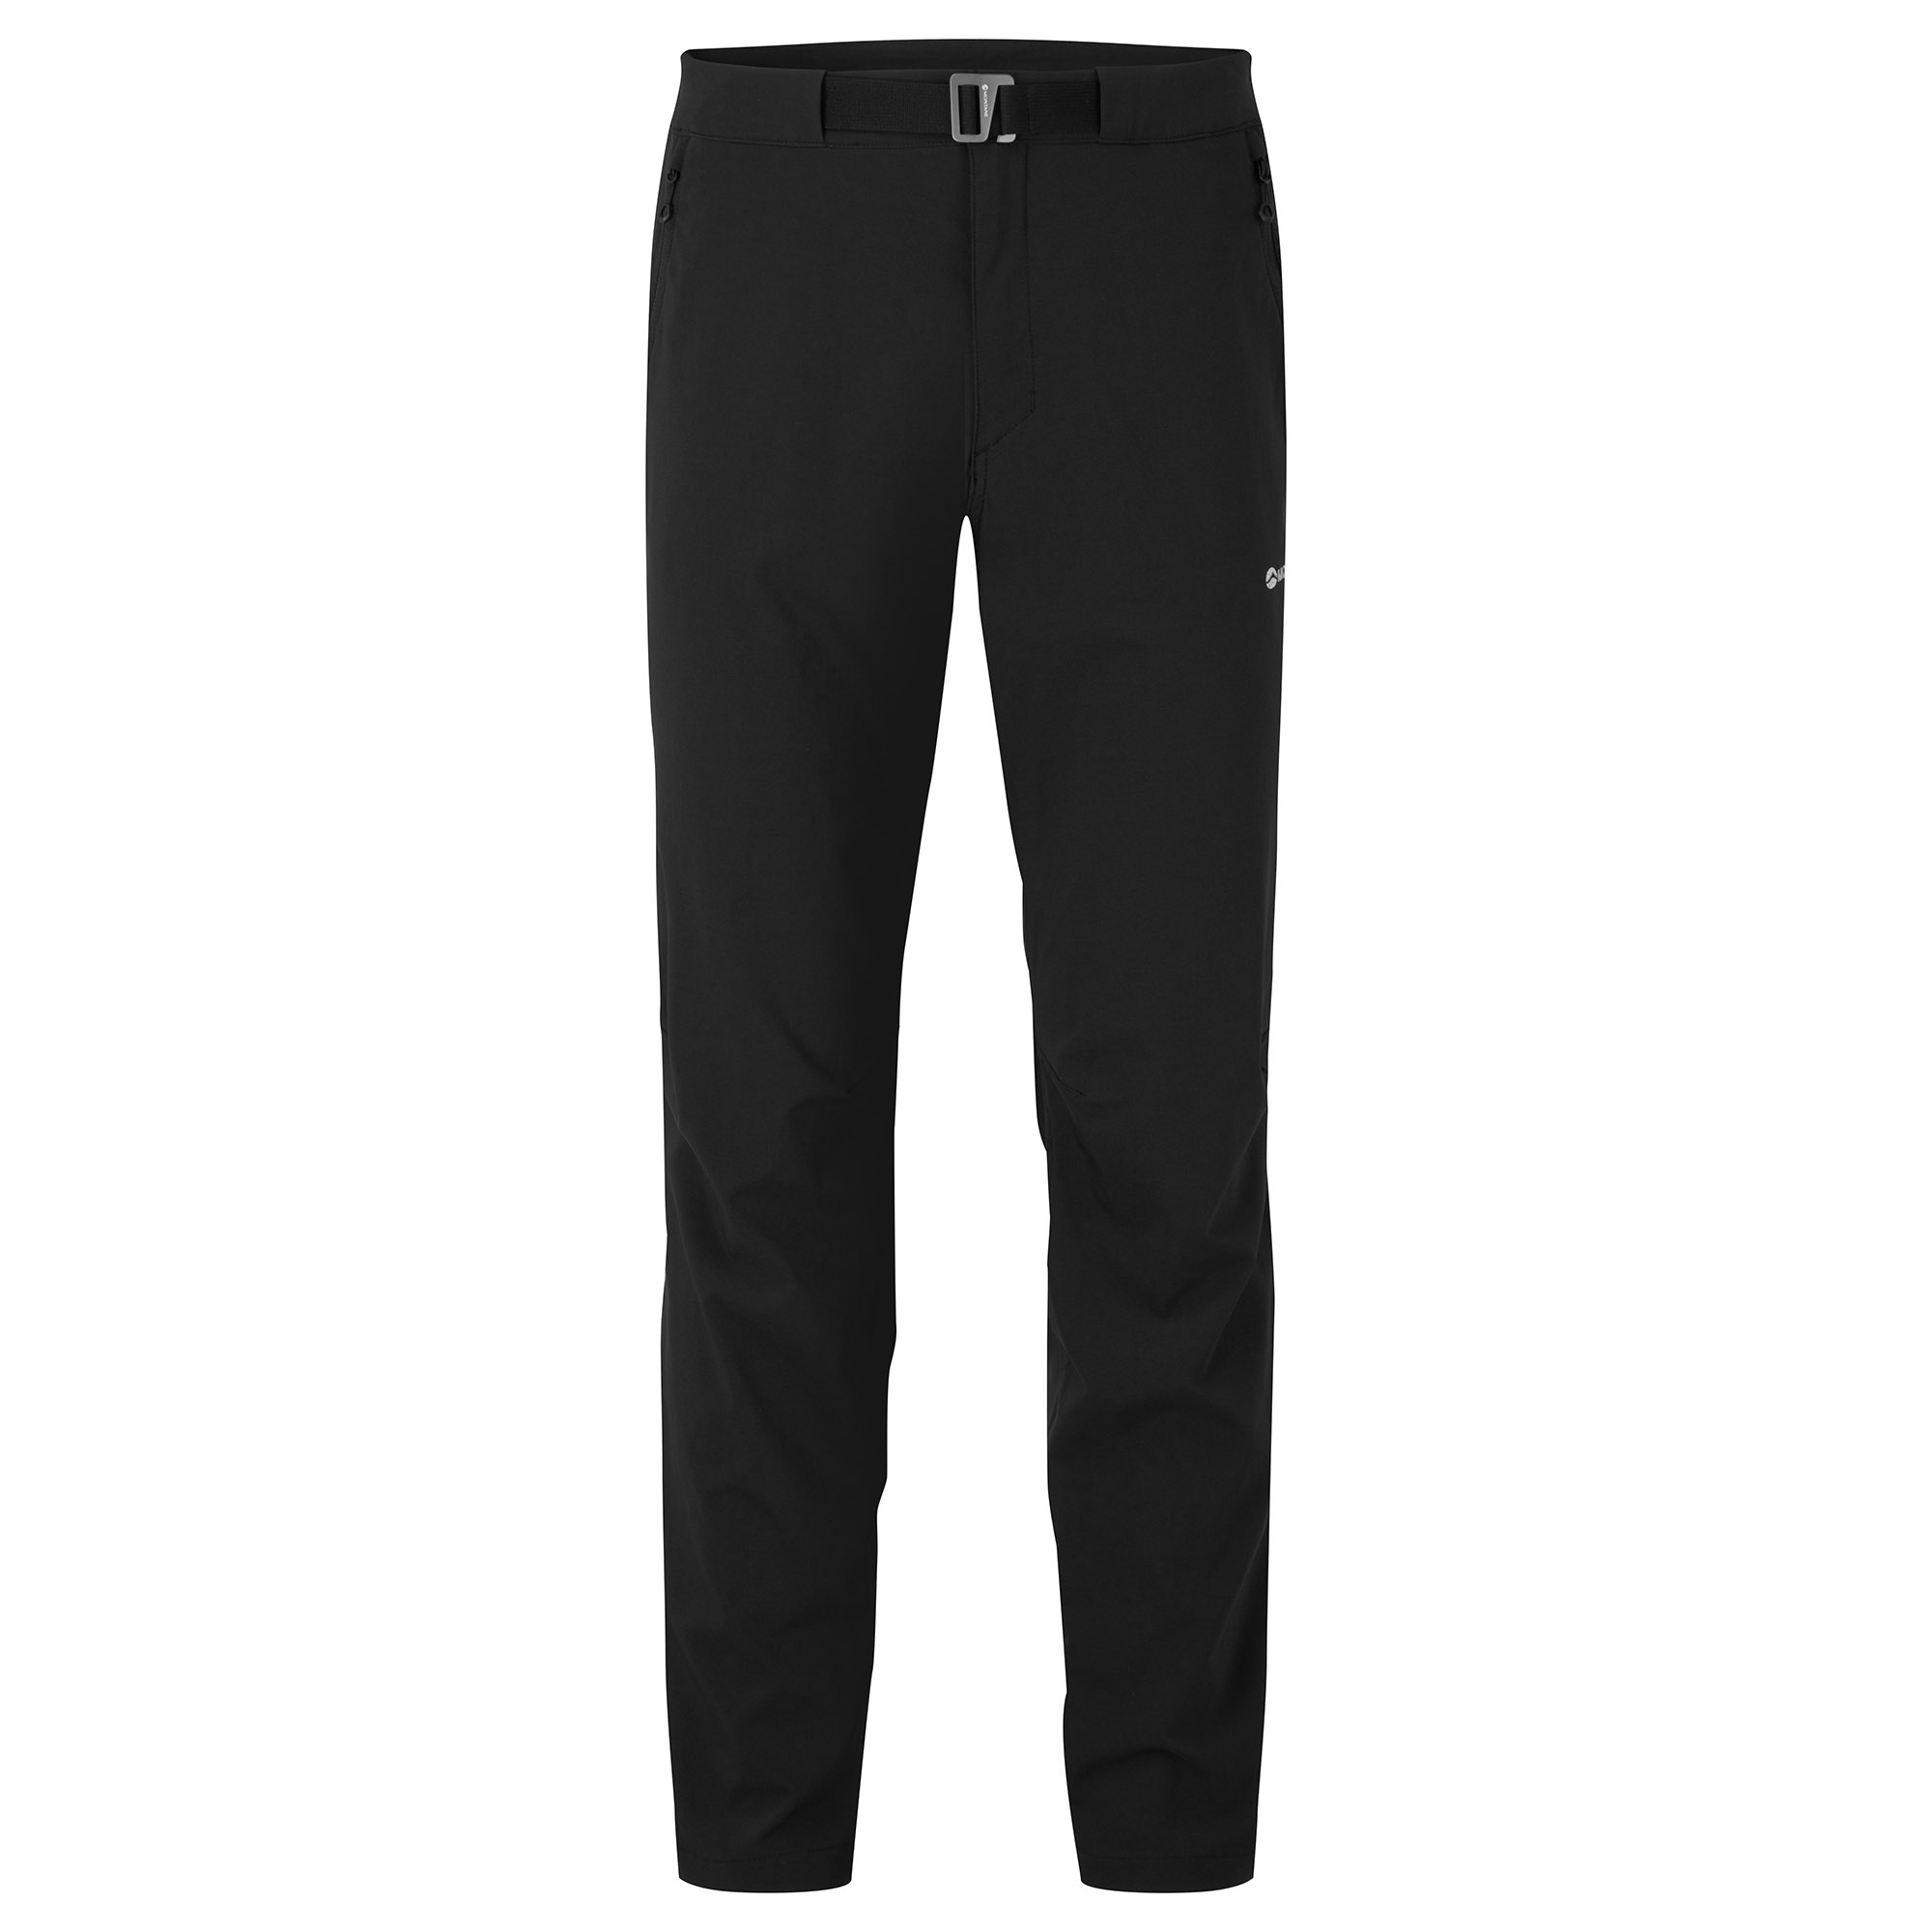 Montane pánské softshellové kalhoty Tenacity Lite Pants - Prodloužené Nohavice Barva: black, Velikost: 36